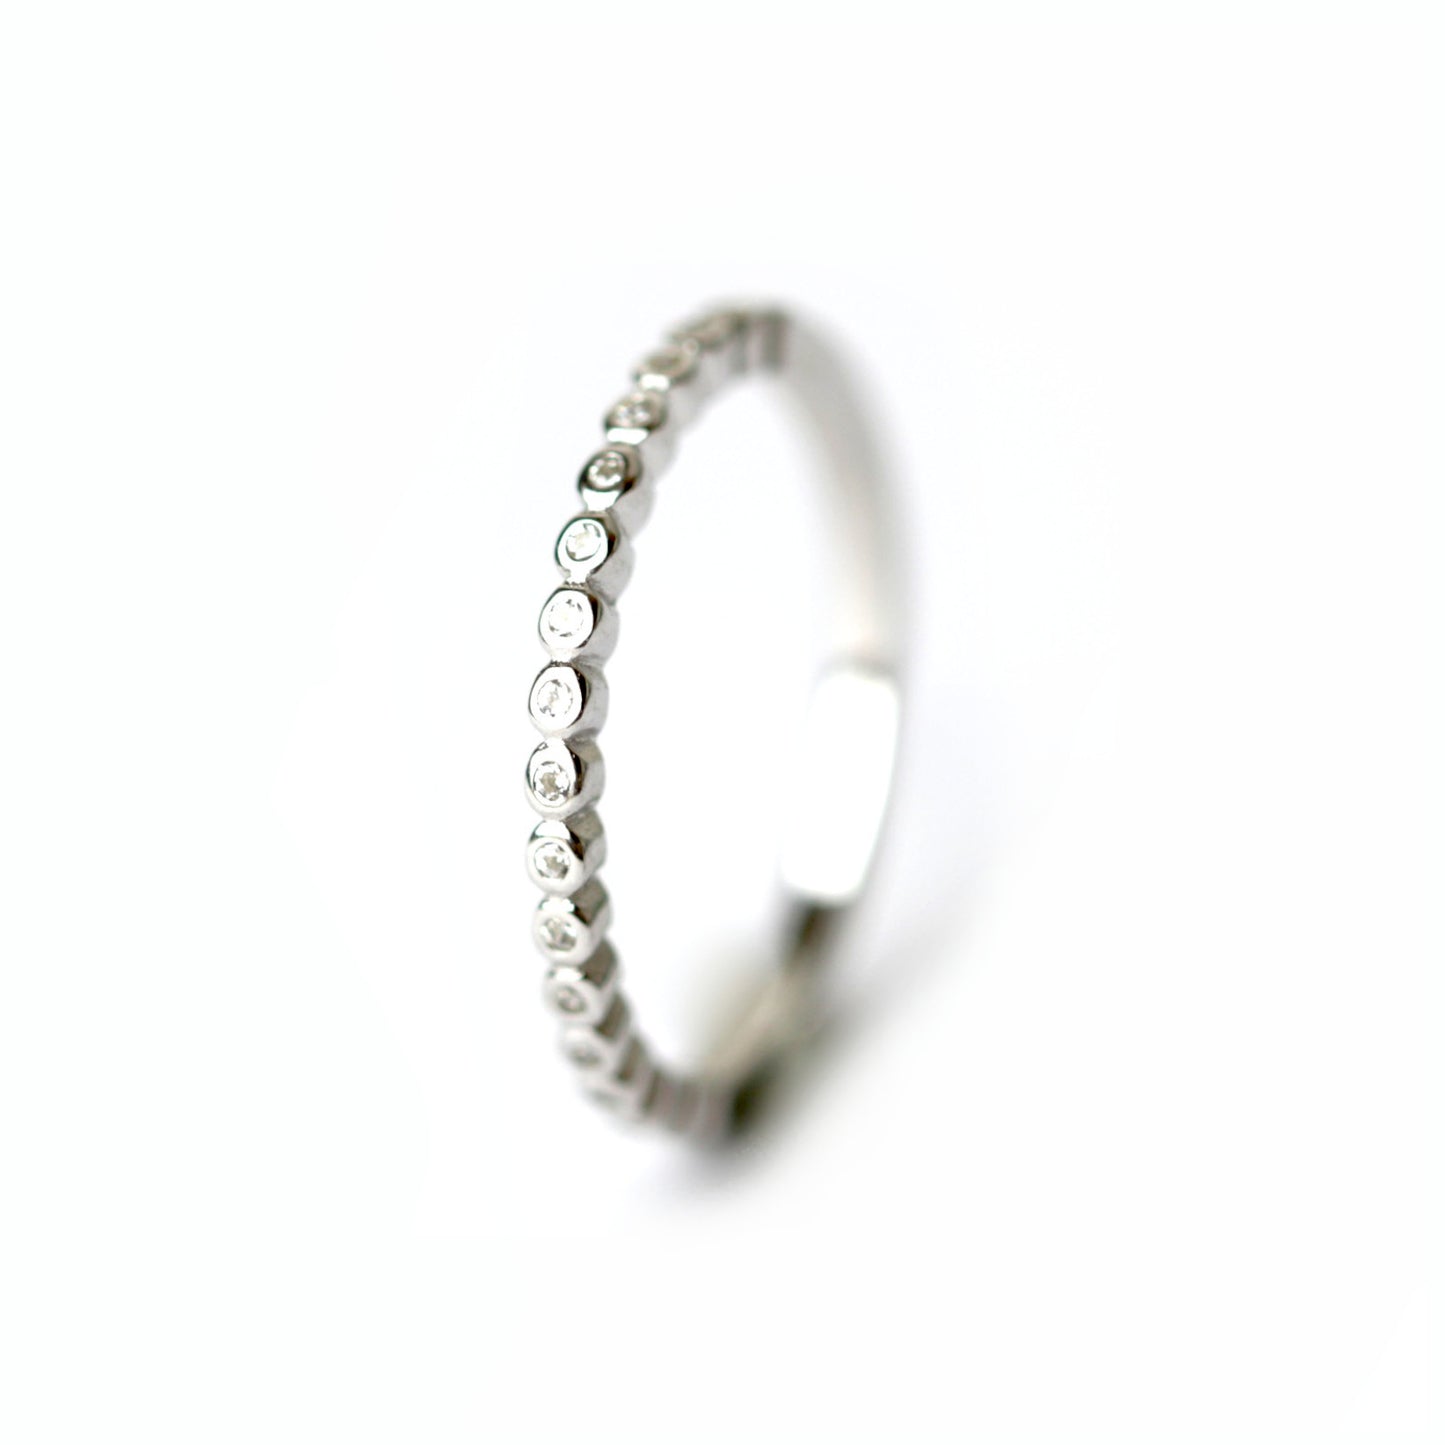 WILHELM MÜLLER - Ring in Silber mit kleinen Zirkonia